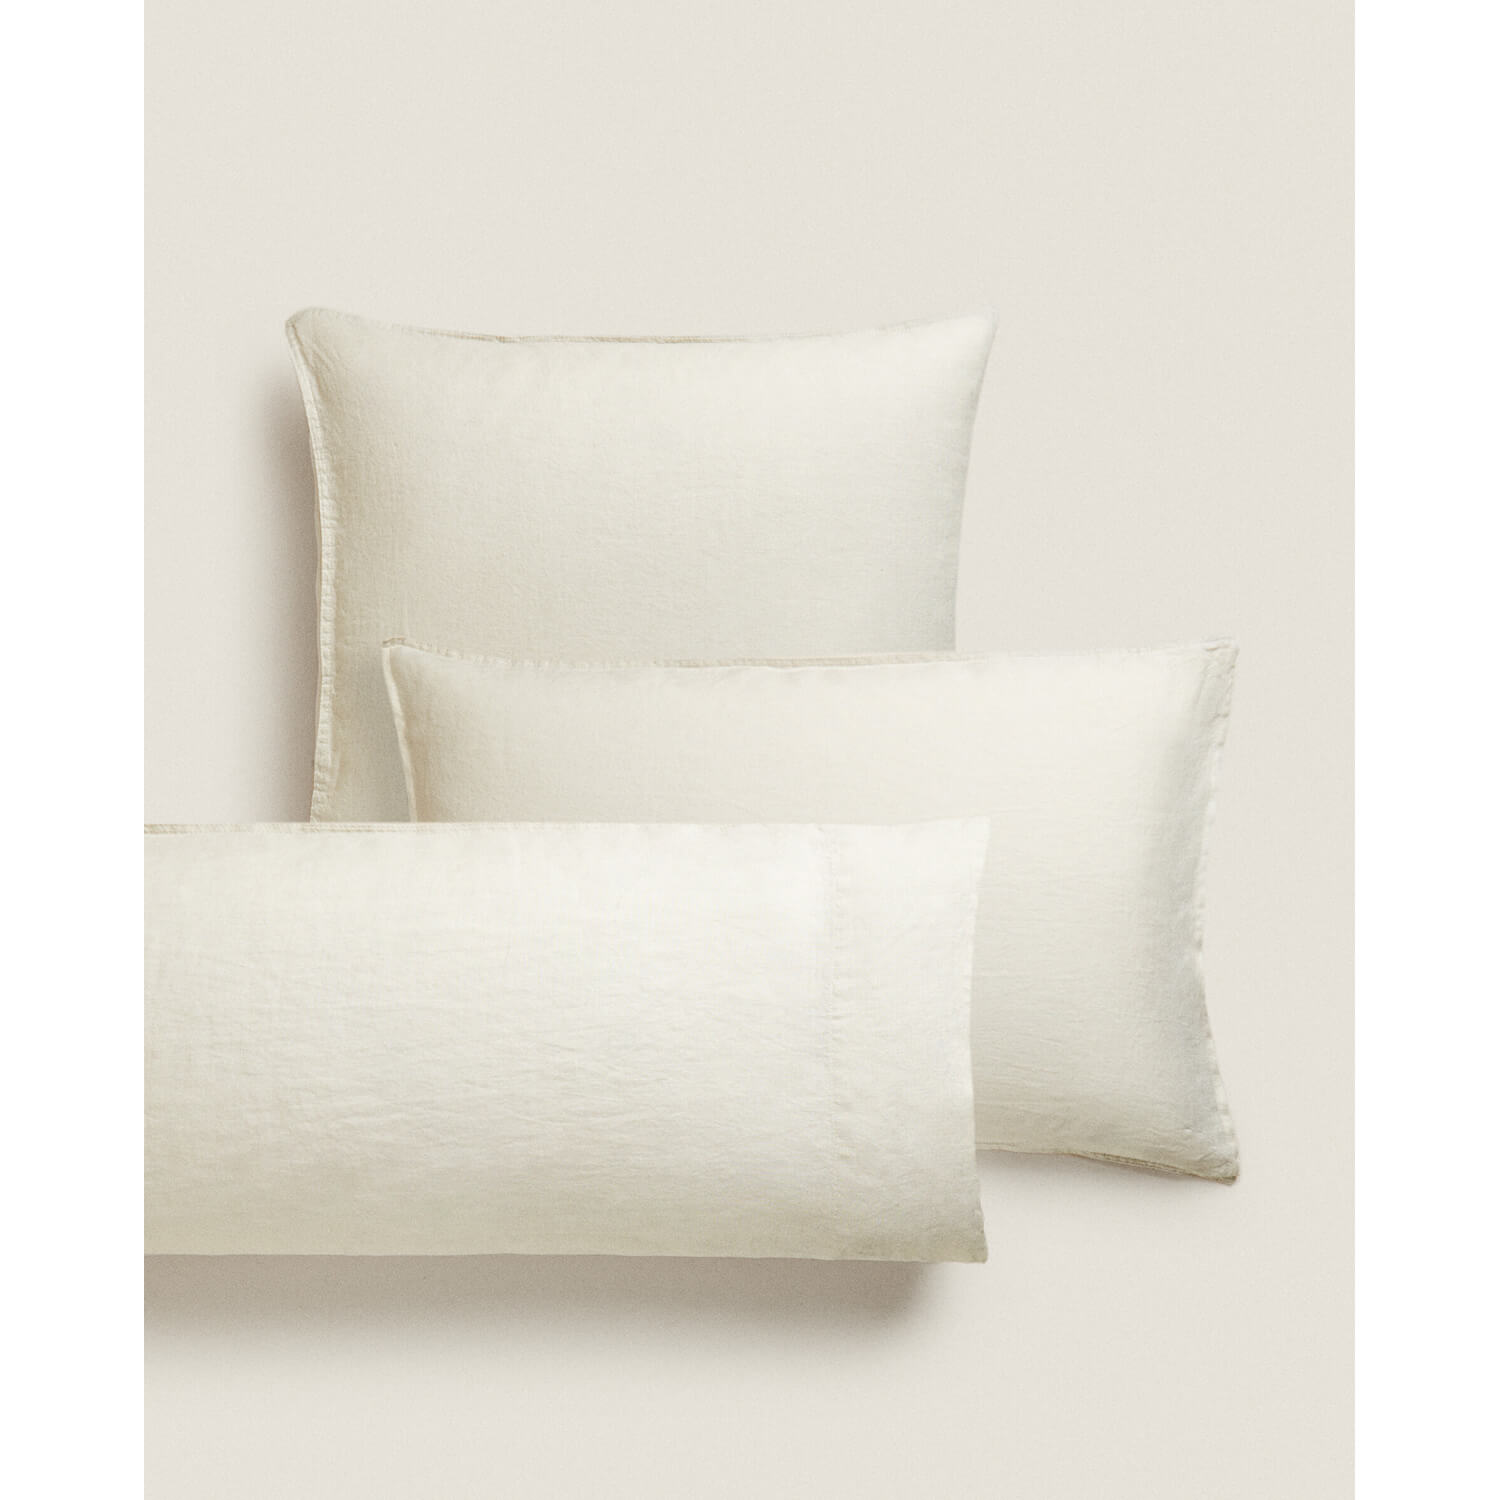 Наволочка Zara Home Washed Linen 140 г/м², песочный наволочка однотонная на подушку или валик из стираного льна 50 x 70 см зеленый